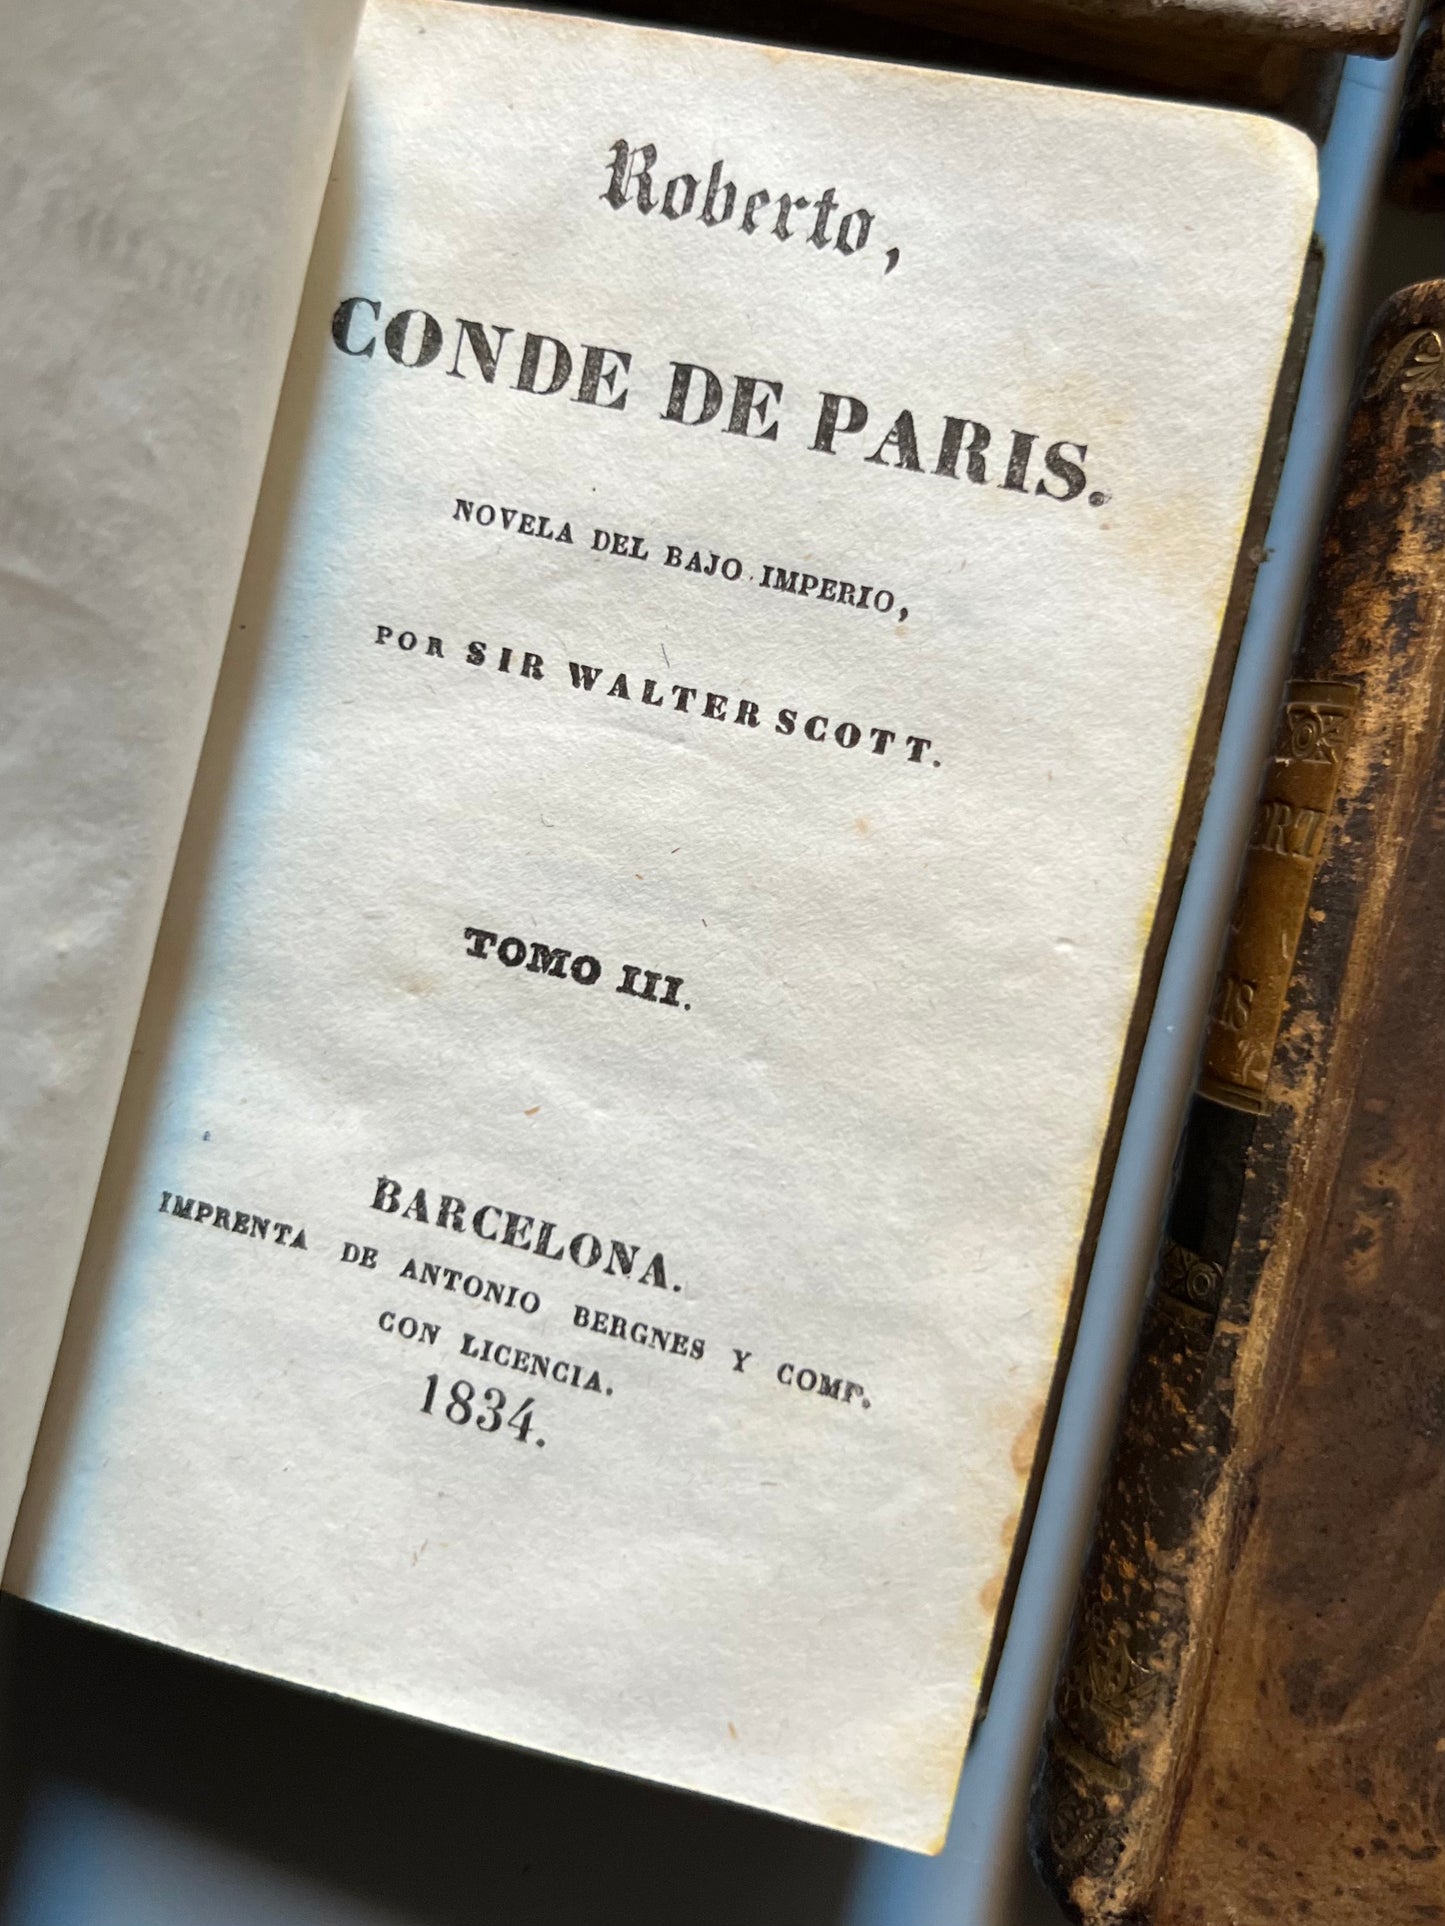 Roberto, Conde de Paris, Walter Scott - Biblioteca de Damas, 1834